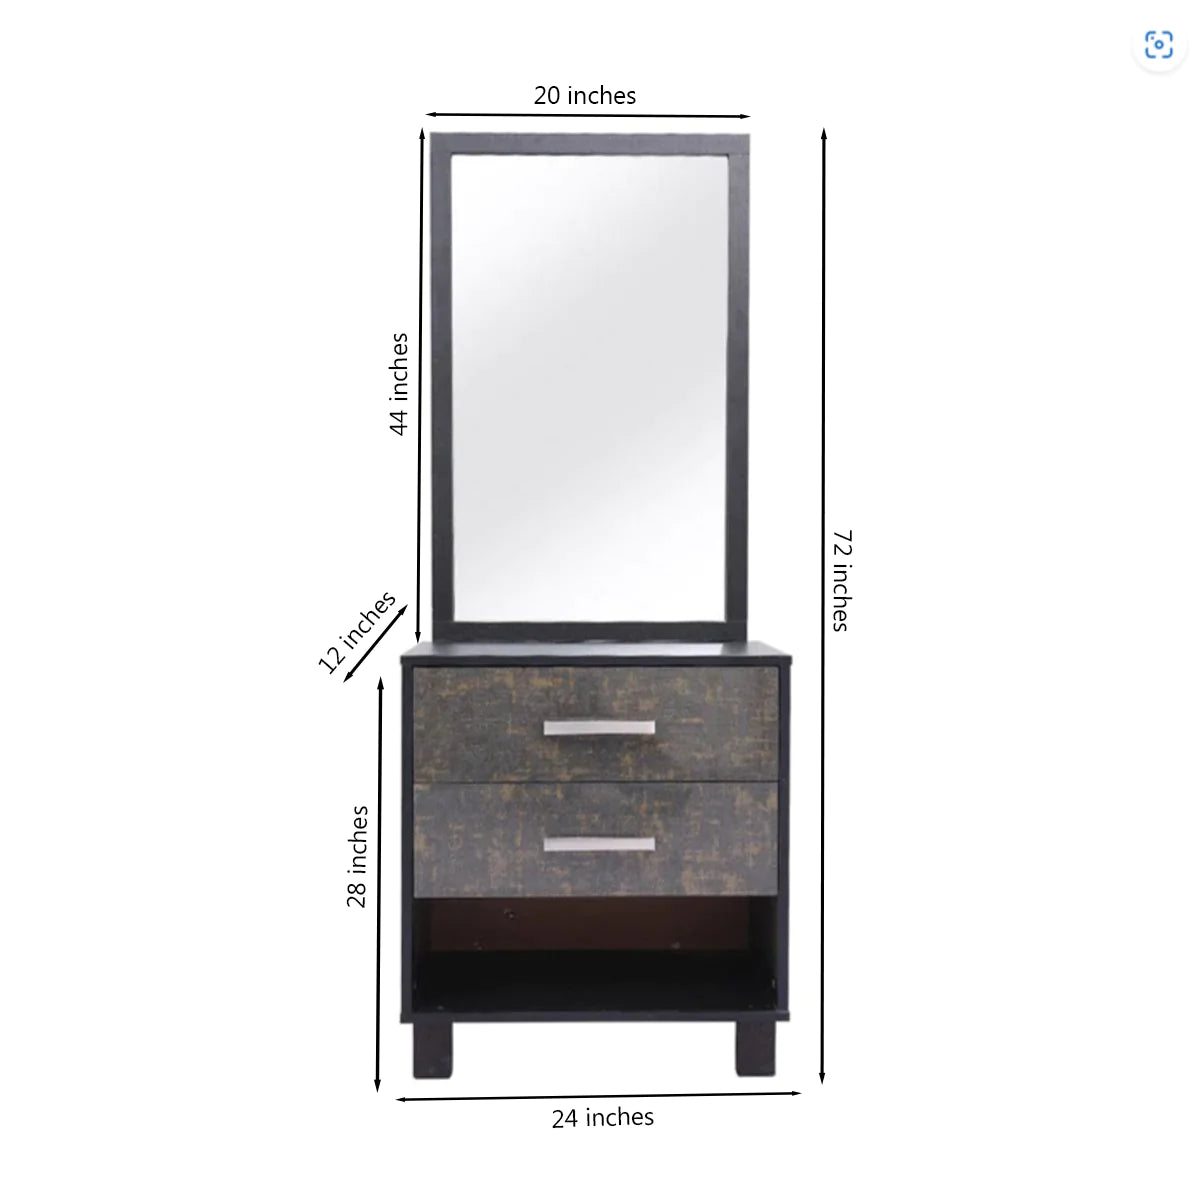 Novak - Bed , Dresser & 3 Door wardrobe